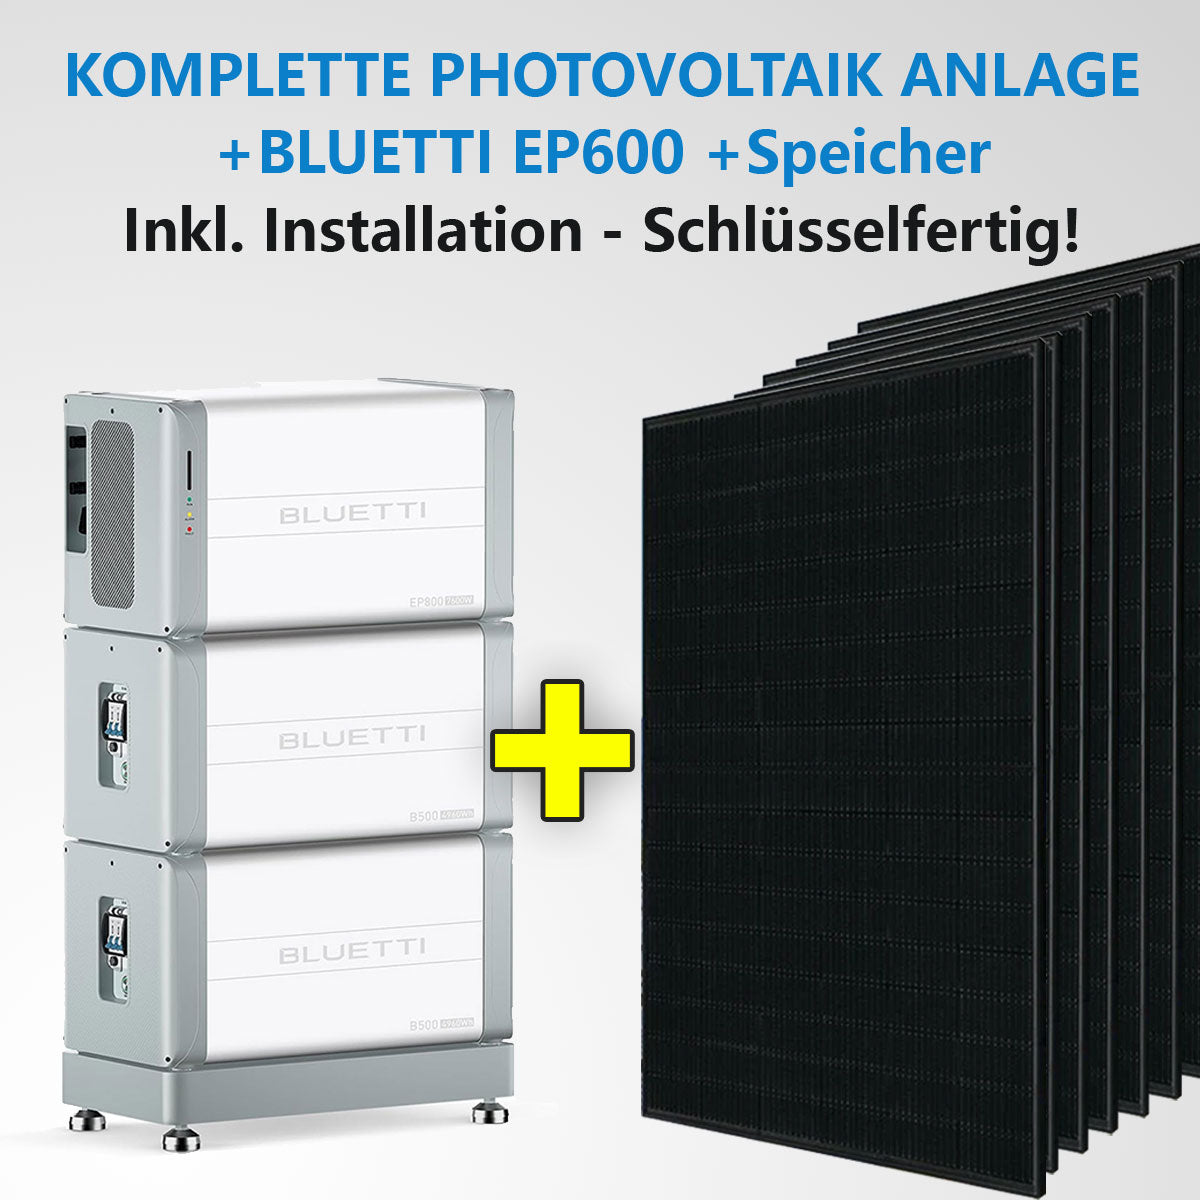 KOMPLETTE PV-ANLAGE INKL. BLUETTI-SPEICHER + INSTALLATION All in One Solaranlage Schlüsselfertig und betriebsbereit